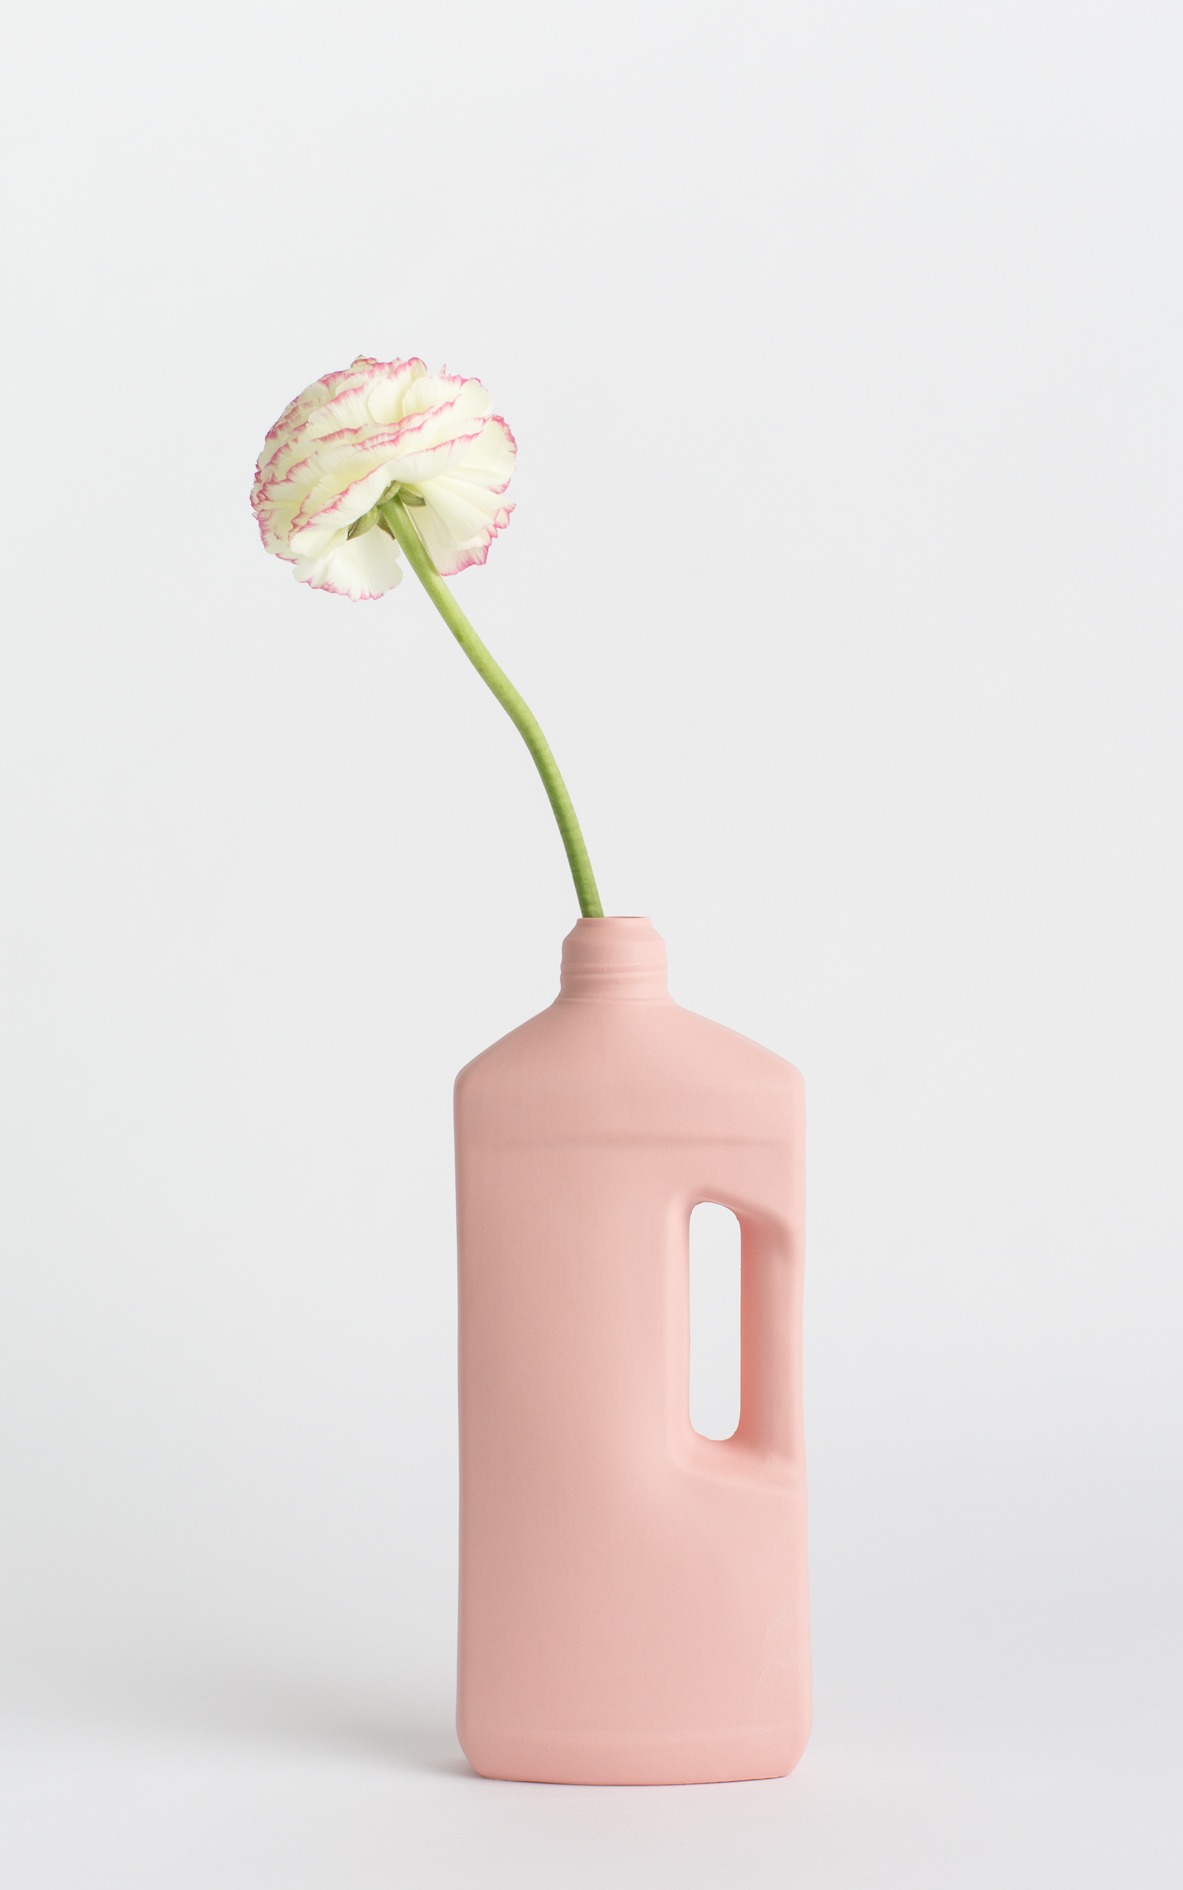 bottle vase #3 rose pink with flower